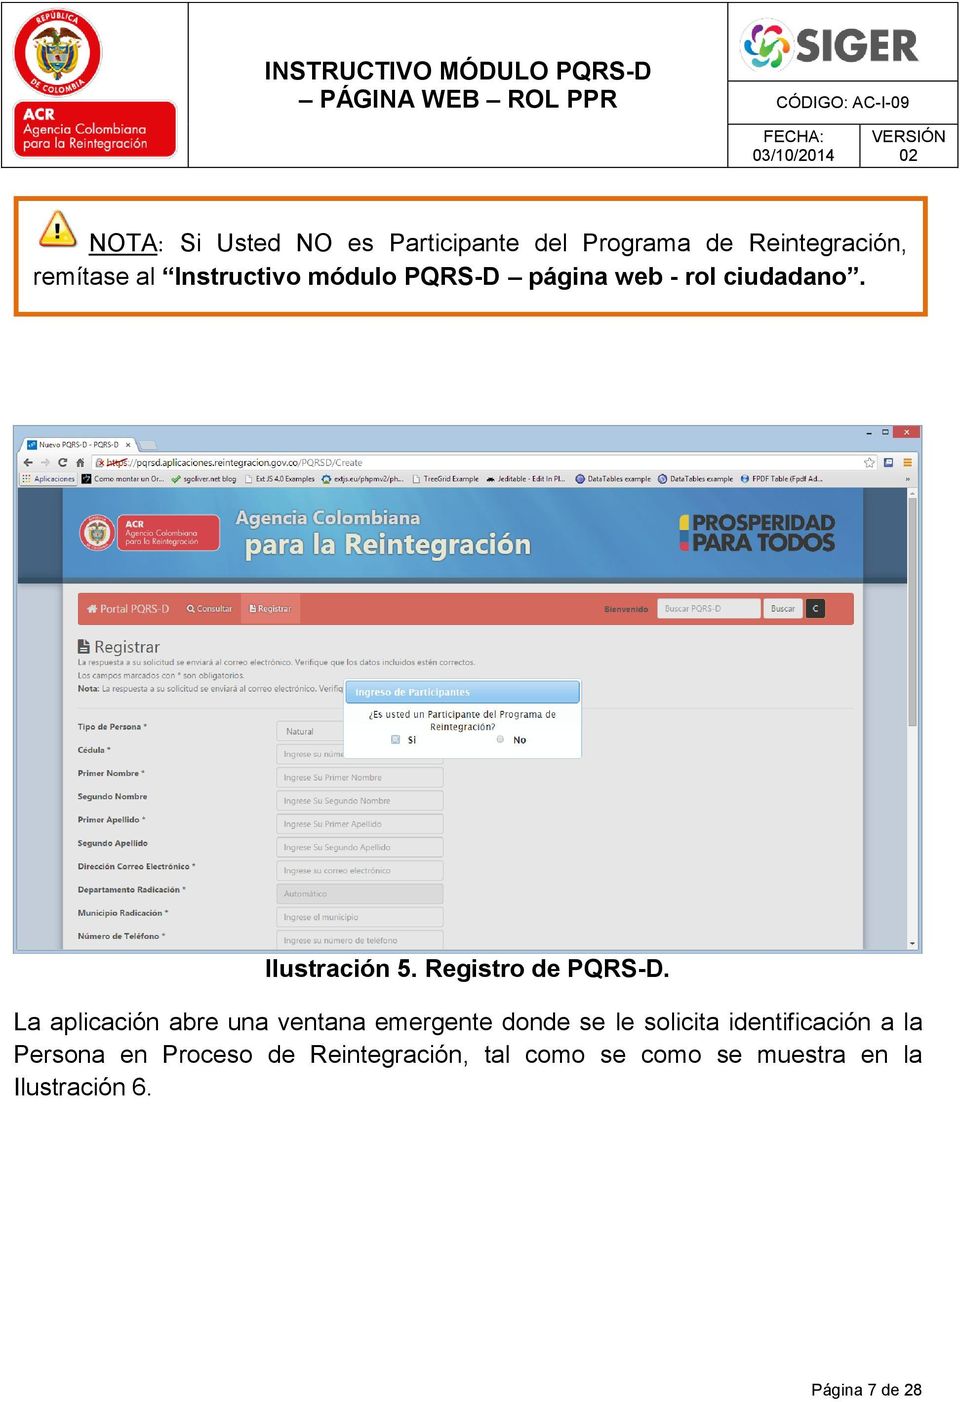 Registro de PQRS-D.